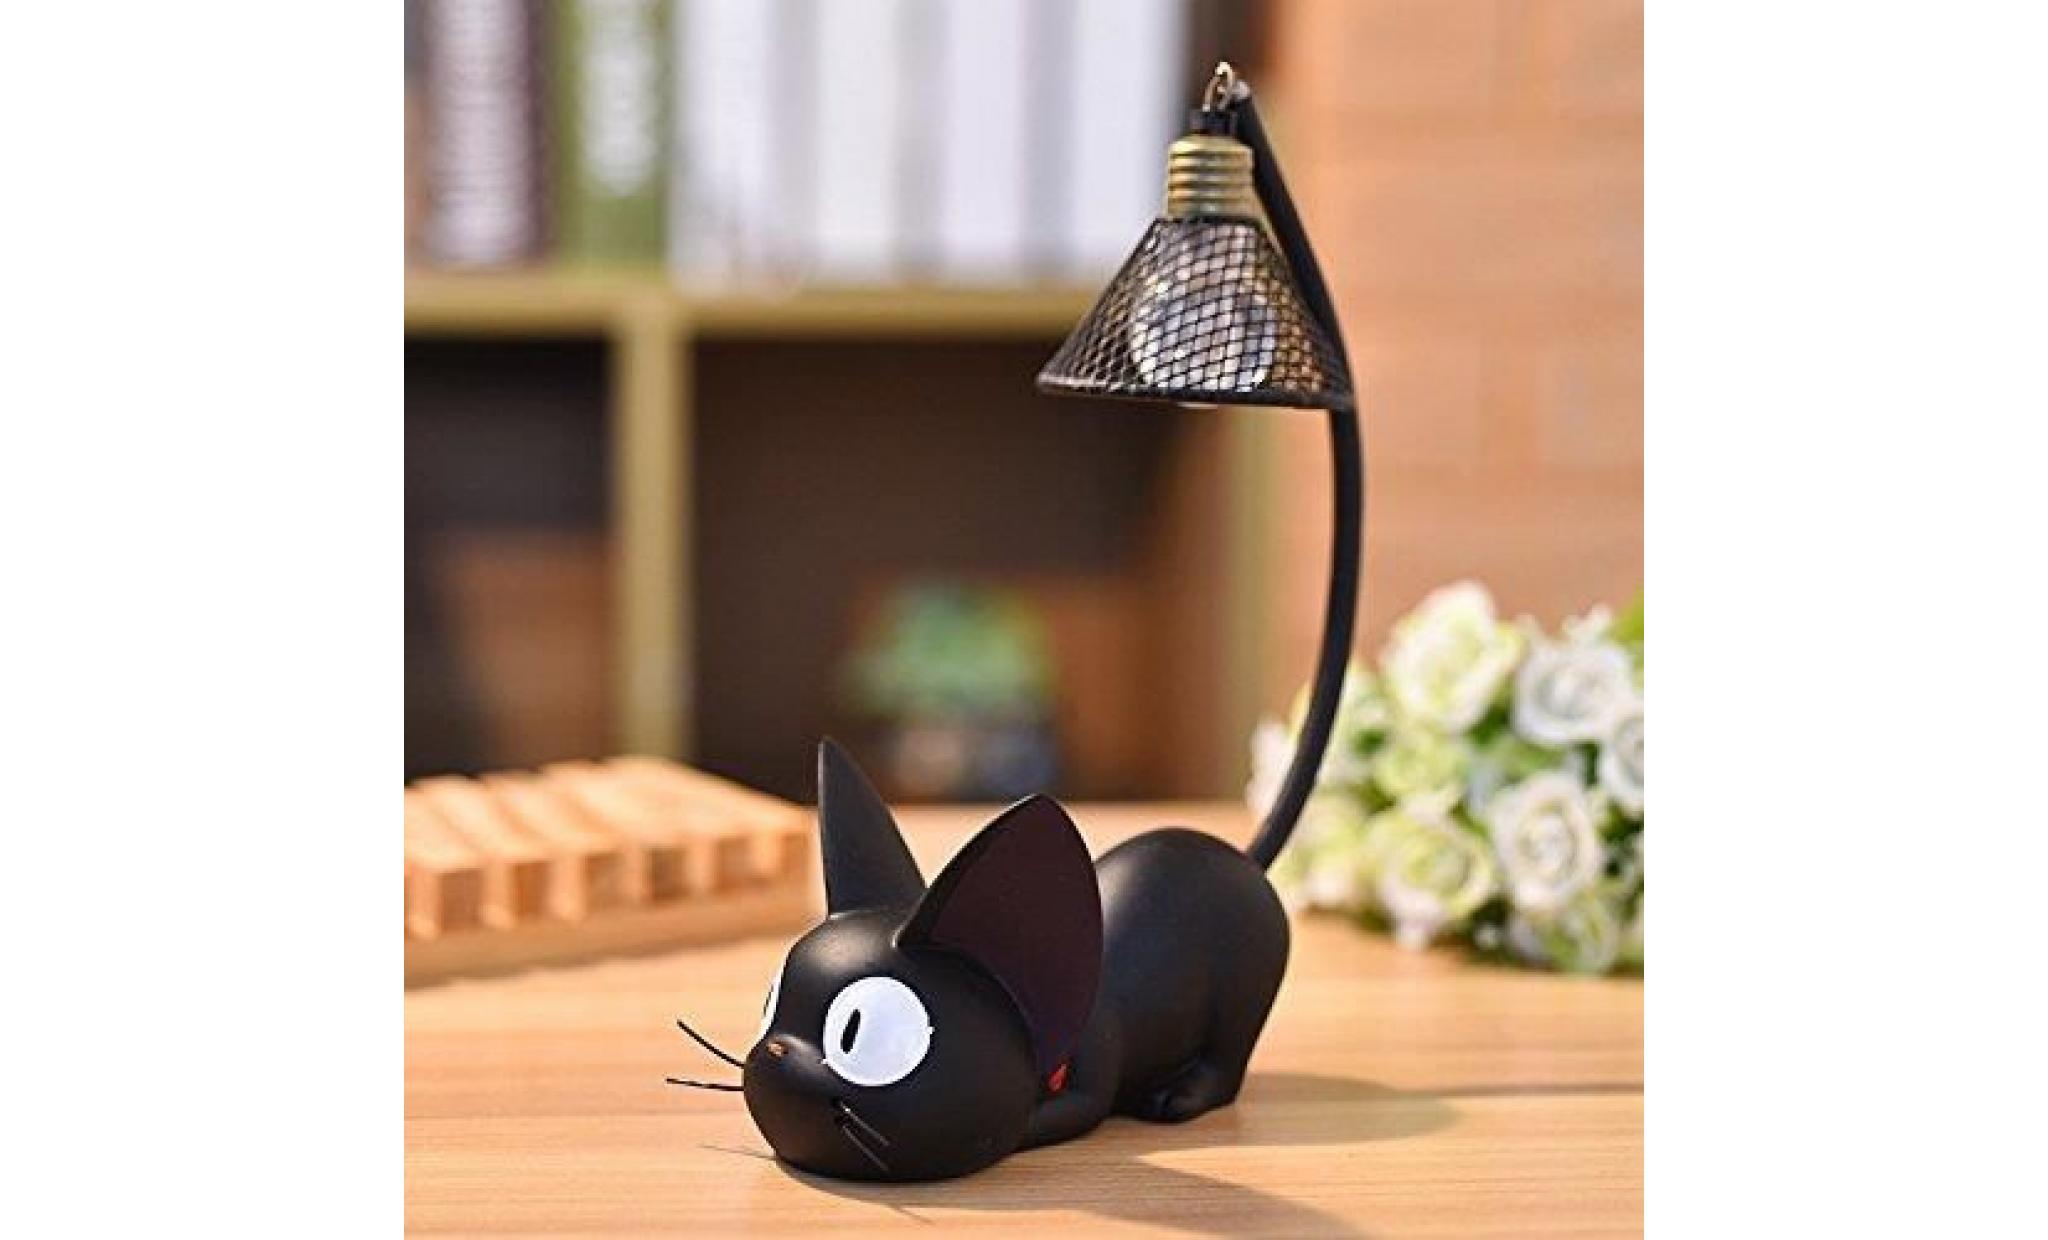 résine chat design lampe creative night light table lampes de chevet pour la lecture (fil de fer abat jour)